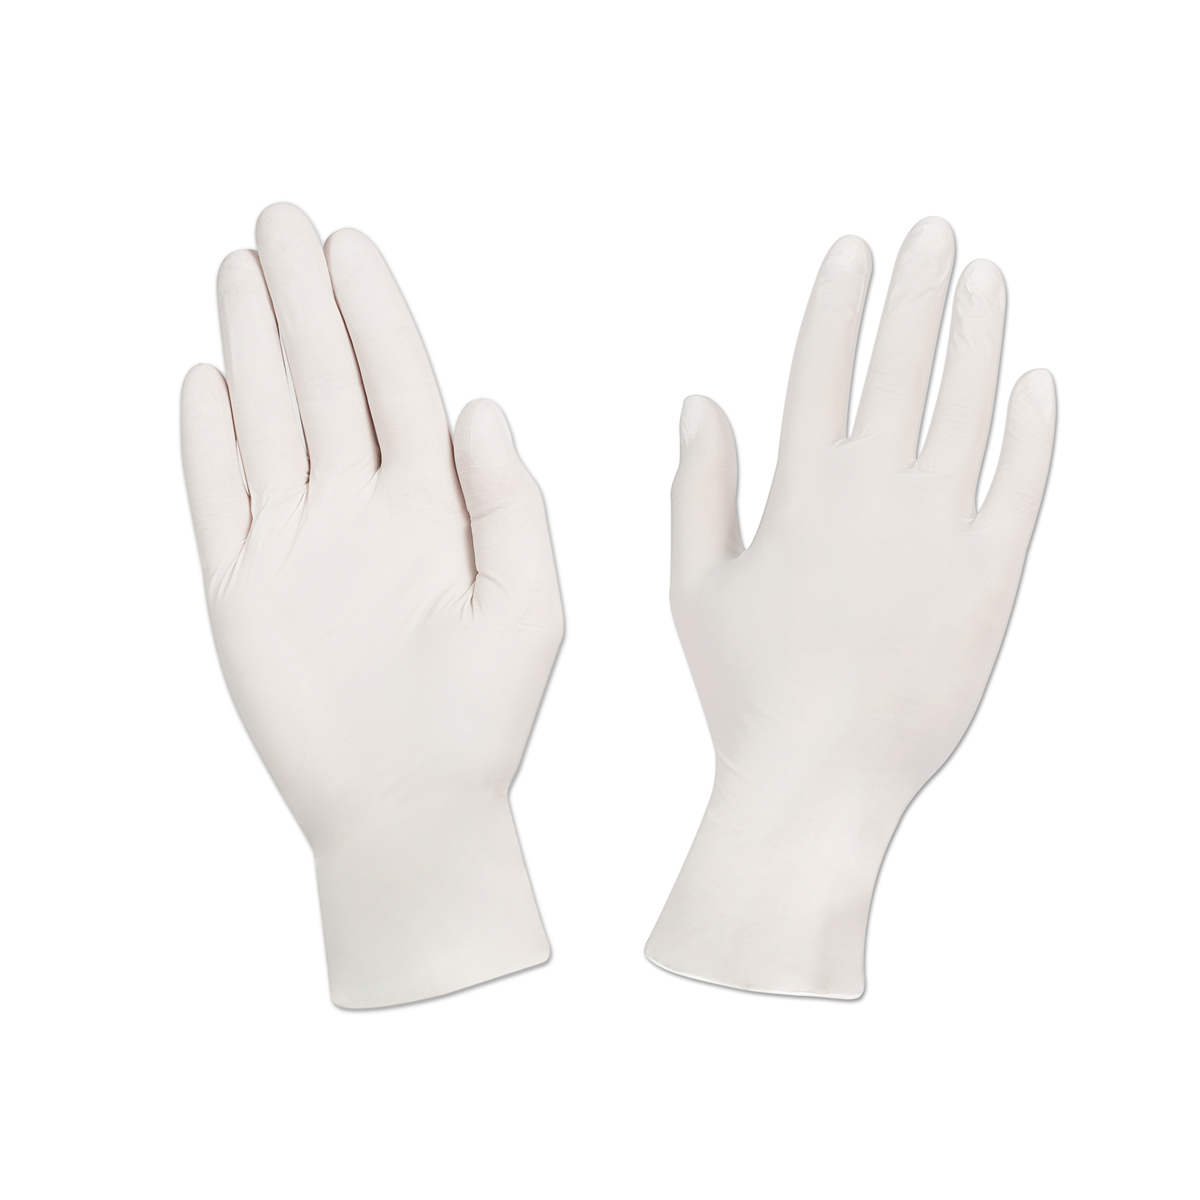 Купить перчатки нитриловые текстурированные на пальцах s белые оптом .